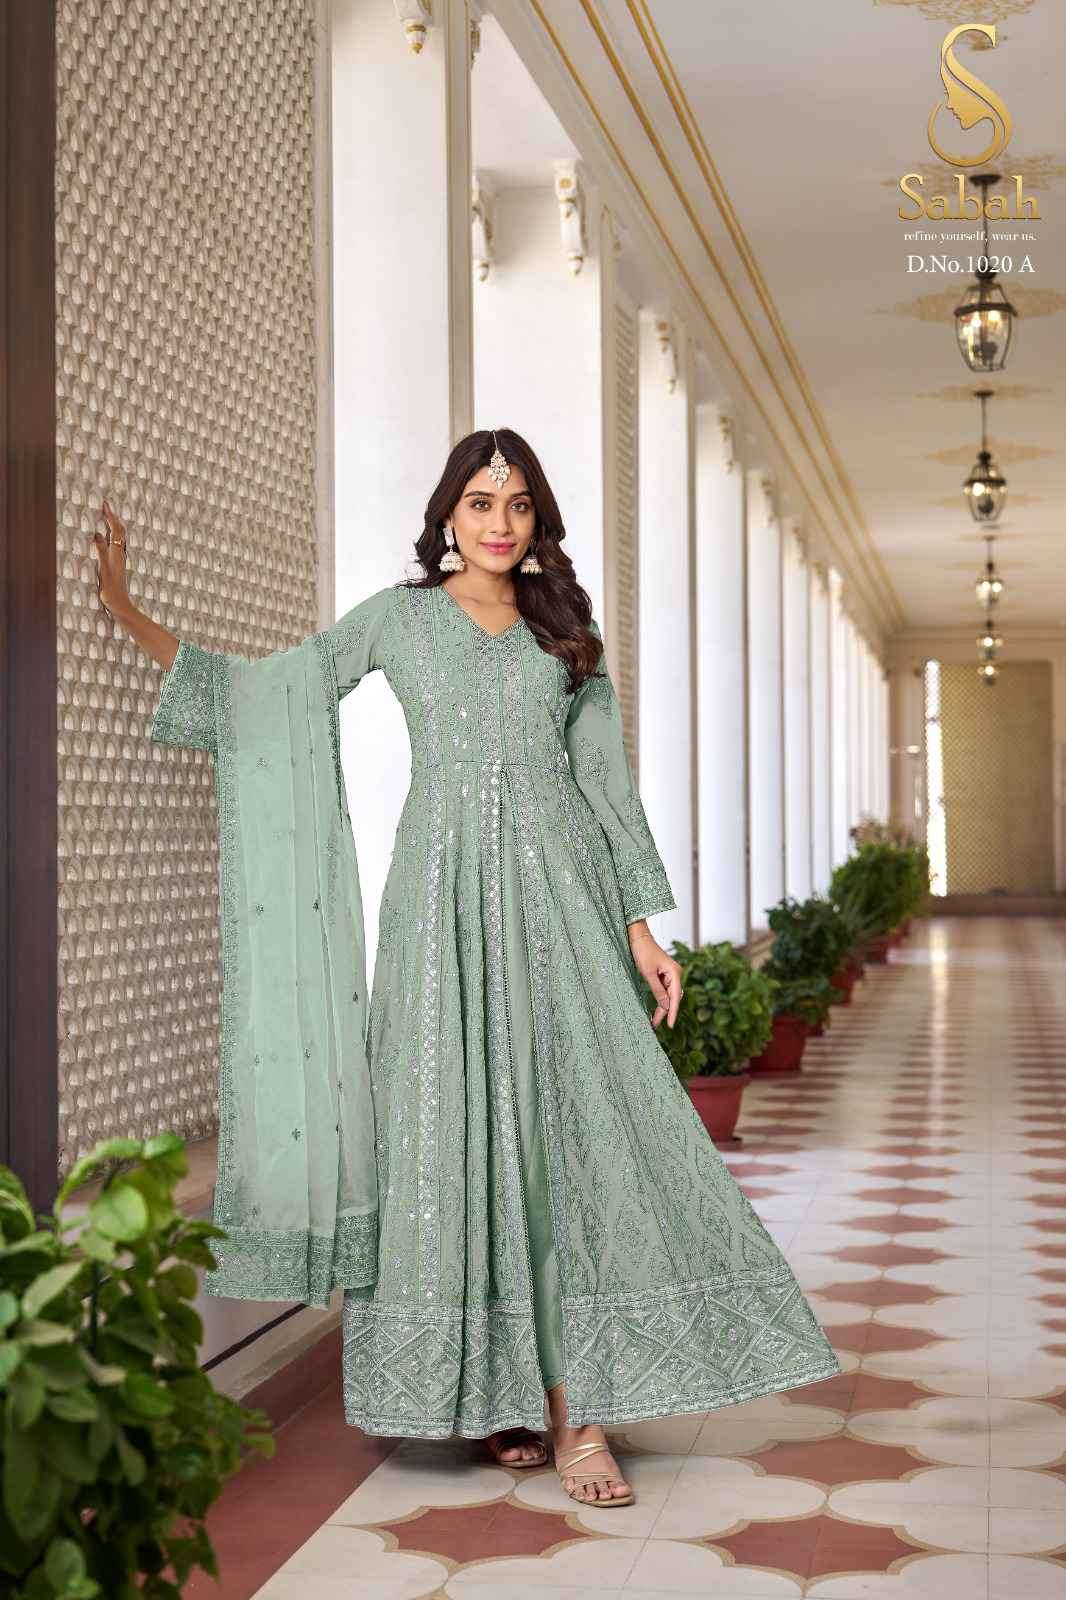 Fk Fashion Sabah Ruhani 1020 Colors Wedding Wear Designer Dress Online Collcetion